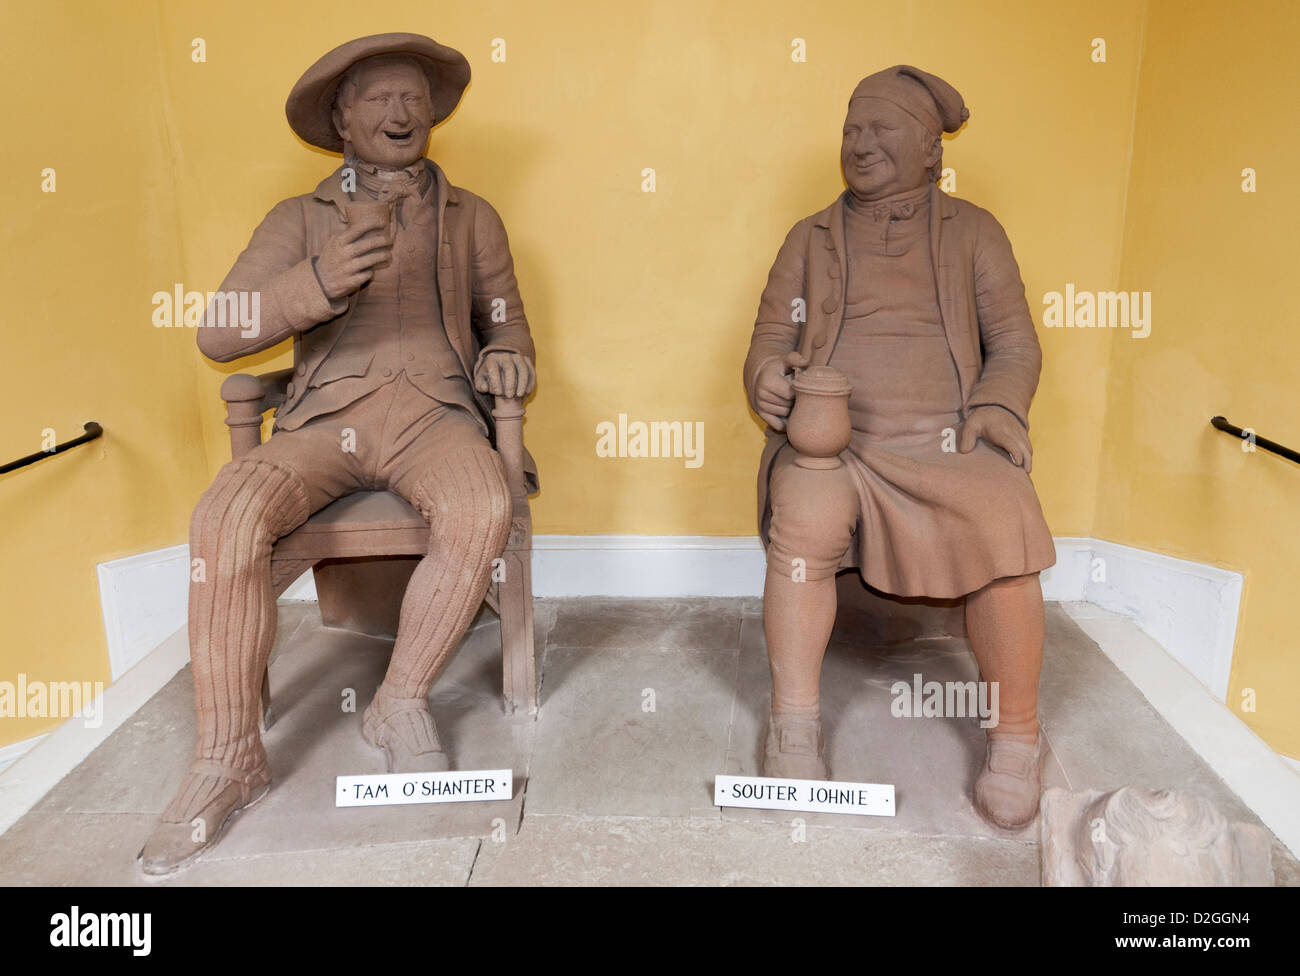 Schottland, Alloway, Statuen des Dichters Robert Burns Zeichen Tam o' shanter und Souter Johnnie Stockfoto